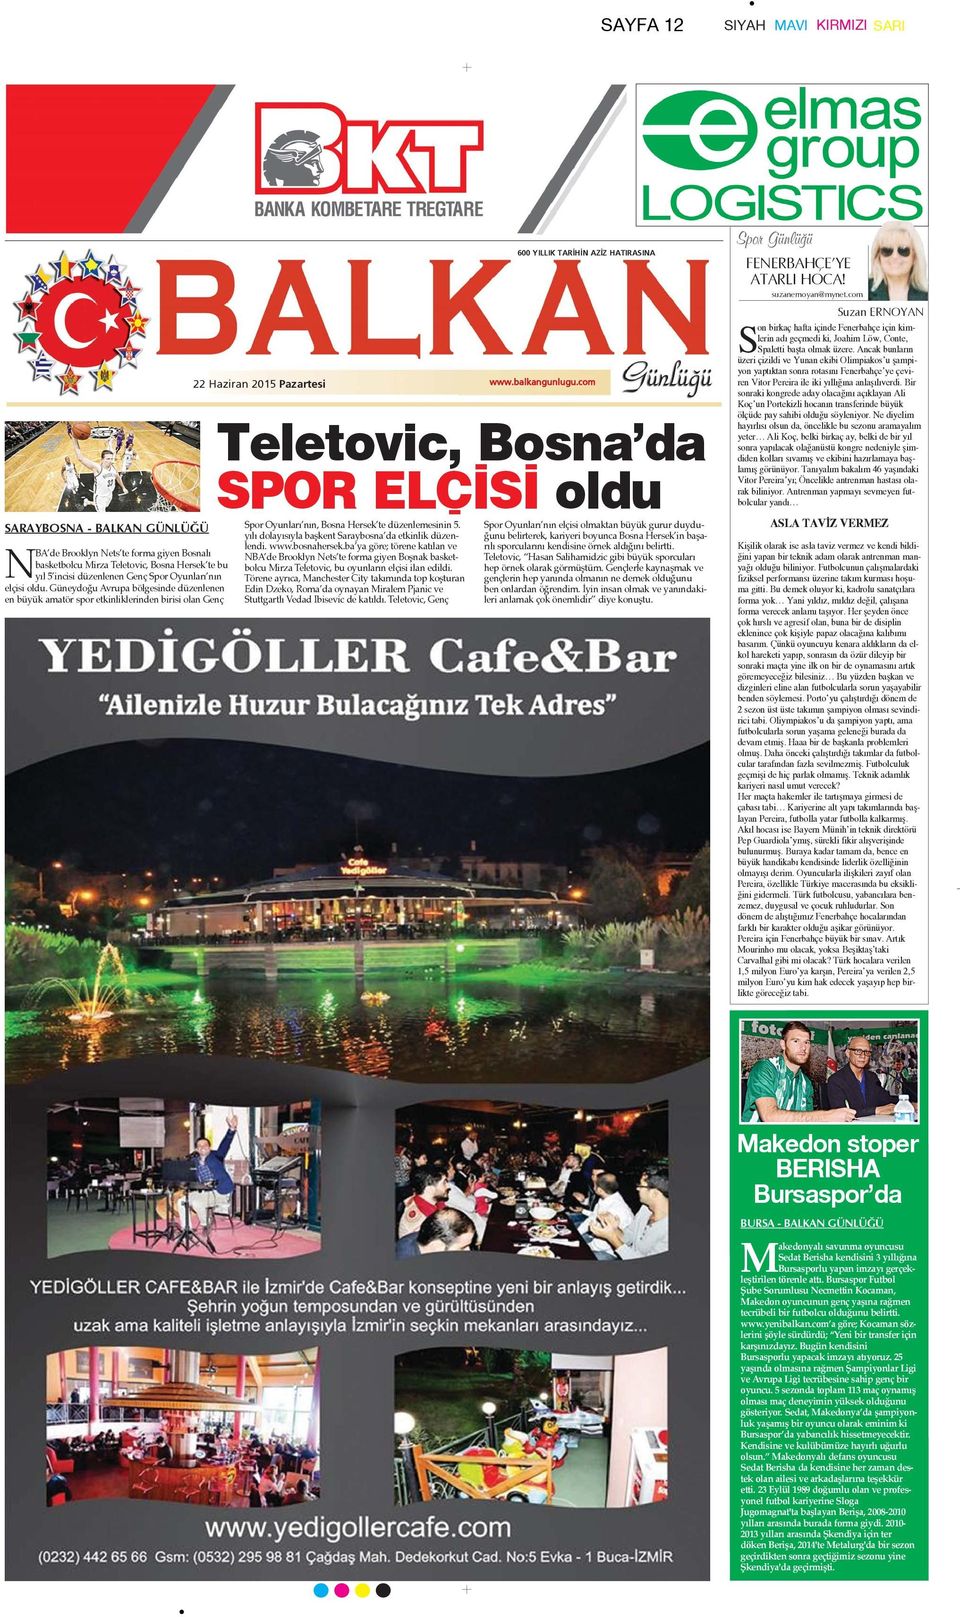 com Teletovic, Bosna da SPOR ELÇ S oldu Spor Oyunları nın, Bosna Hersek te düzenlemesinin 5. yılı dolayısıyla başkent Saraybosna da etkinlik düzenlendi. www.bosnahersek.